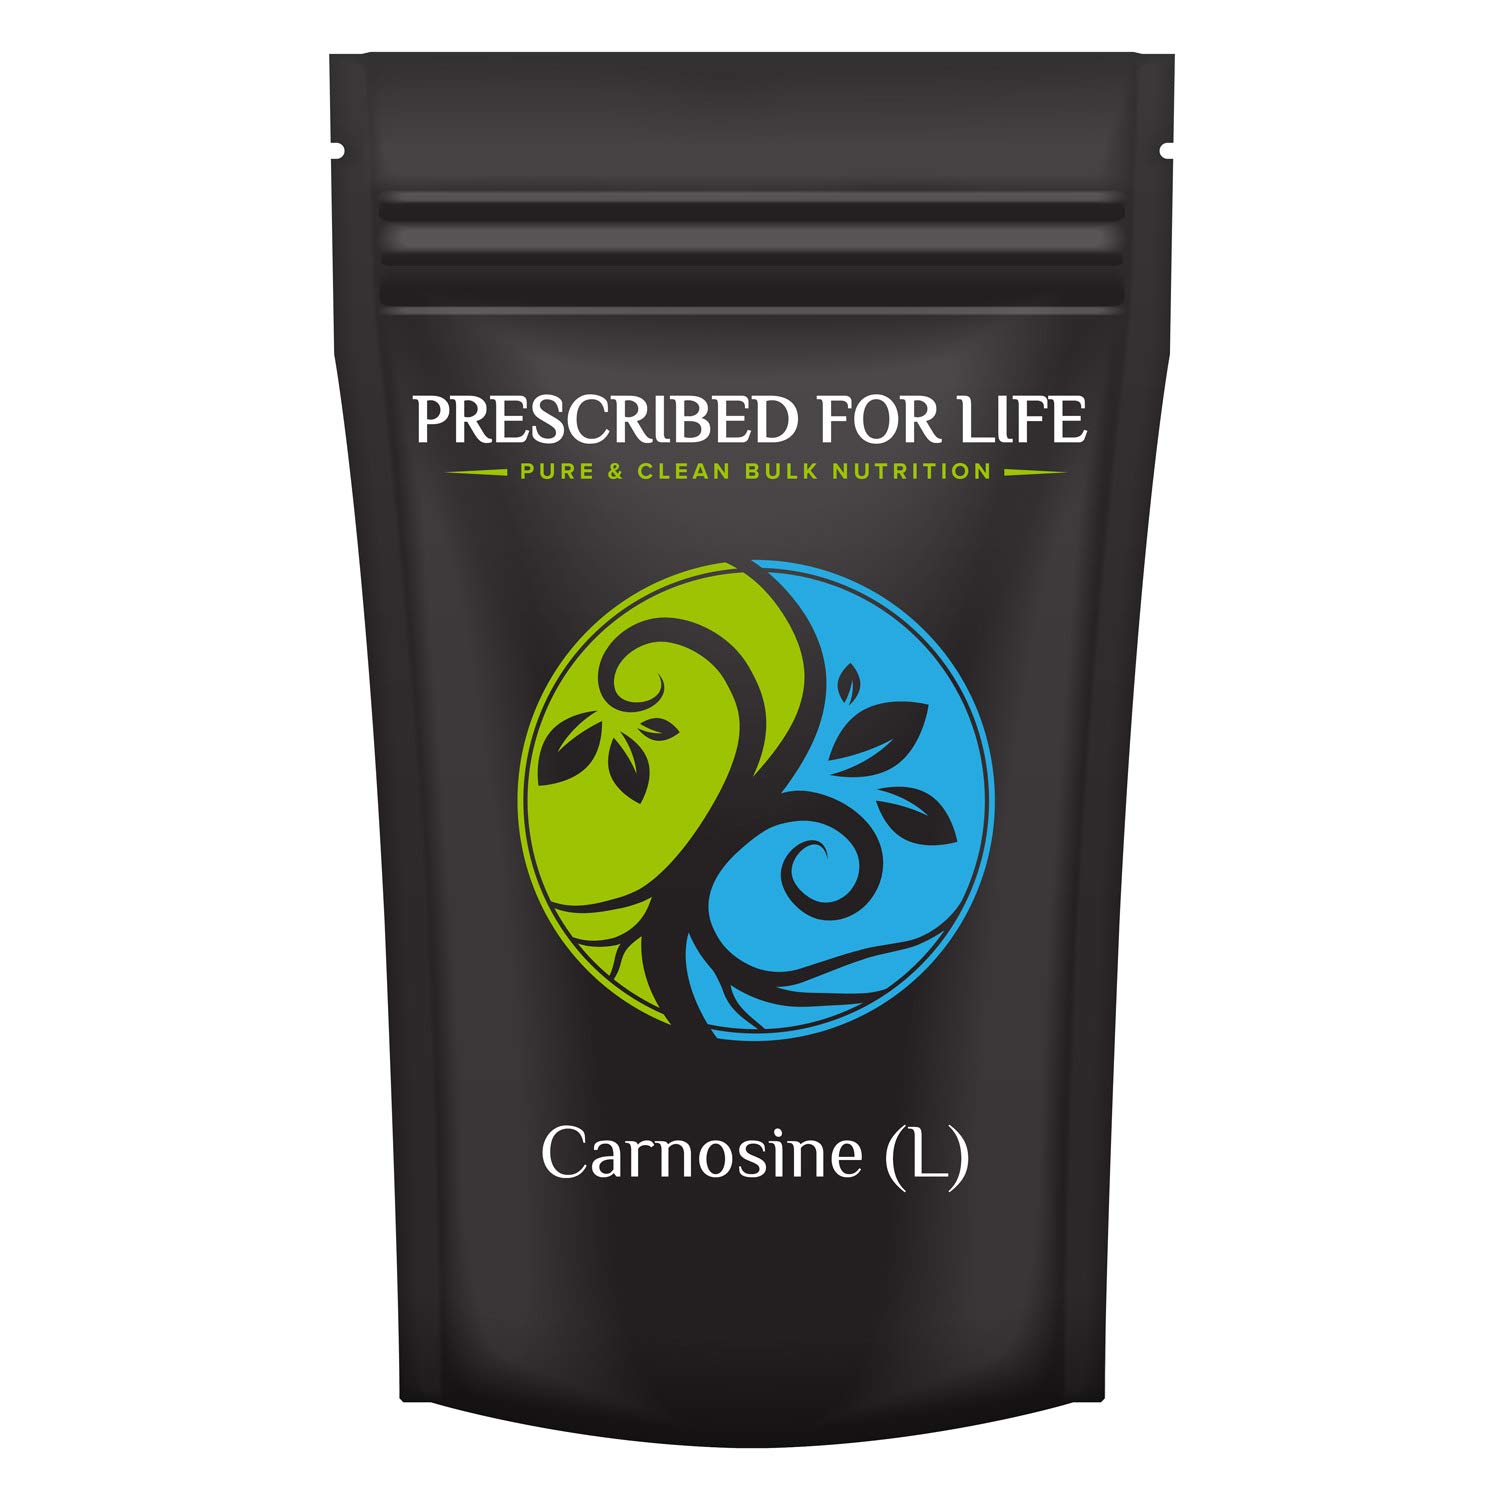 Prescribed For Life Carnosine (L) - Natutral Dipeptide of Amino Acids Beta-Alanine & Histidine, 10 kg